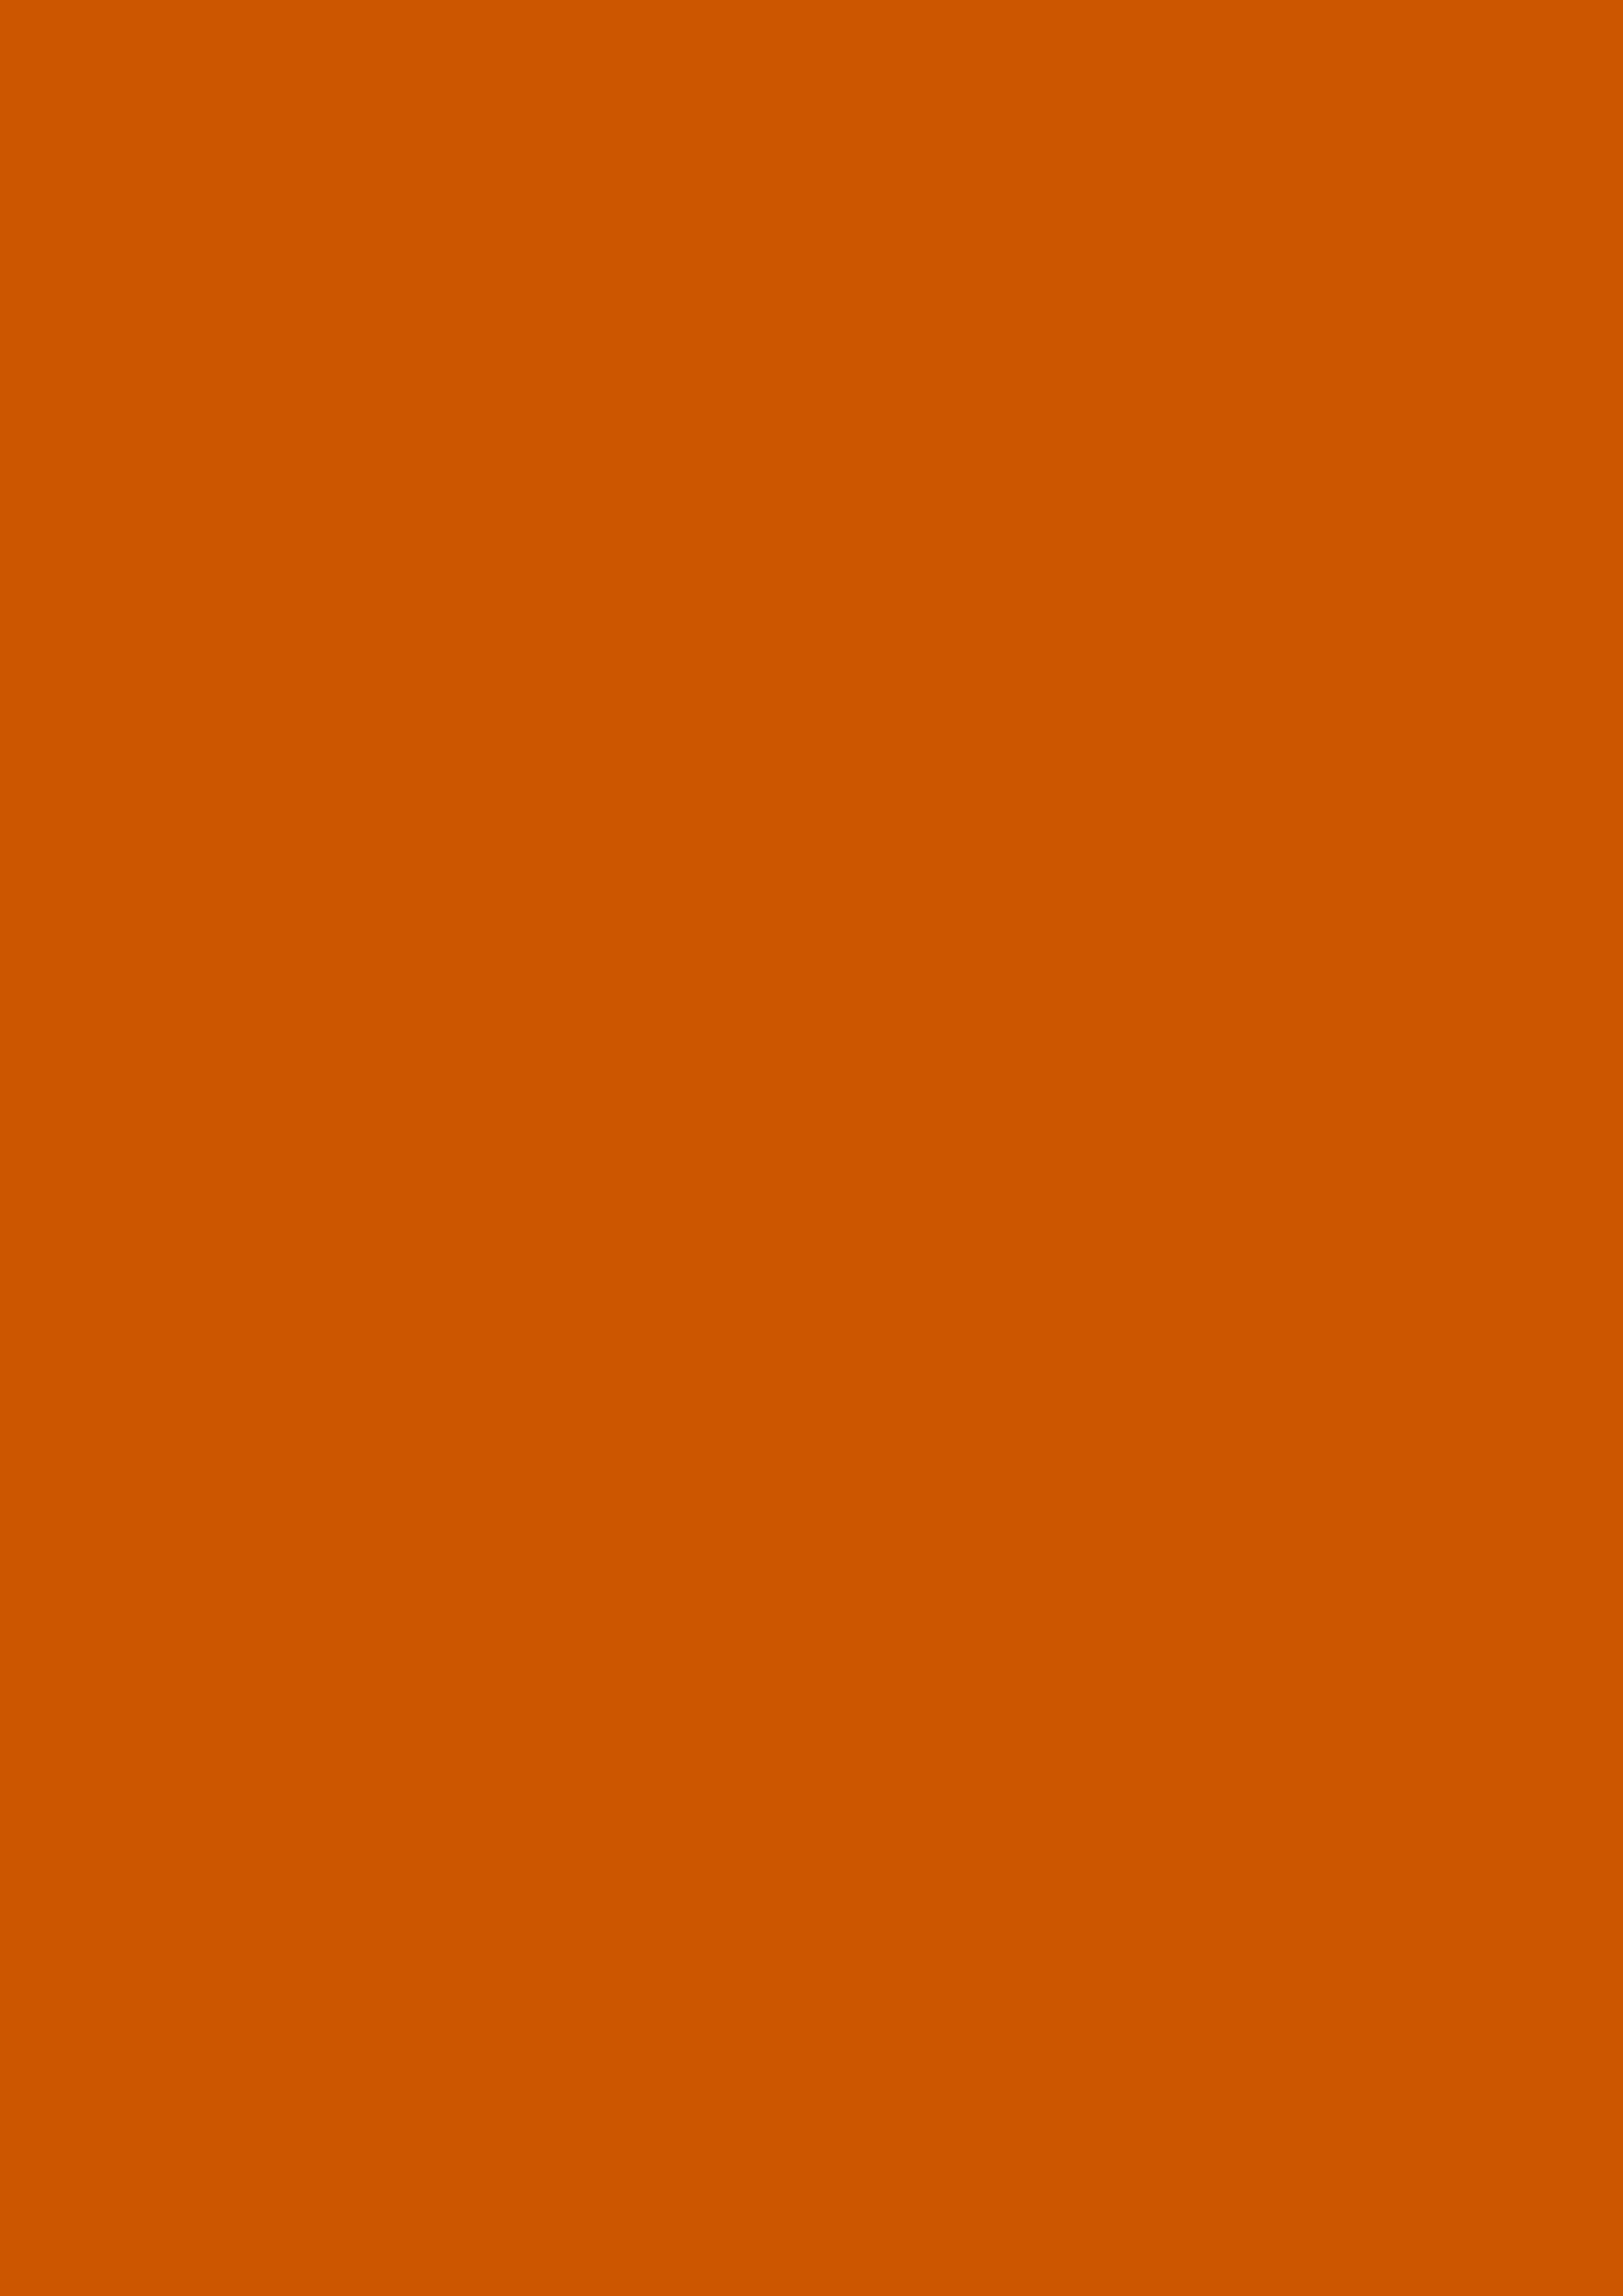 2480x3508 Burnt Orange Solid Color Background